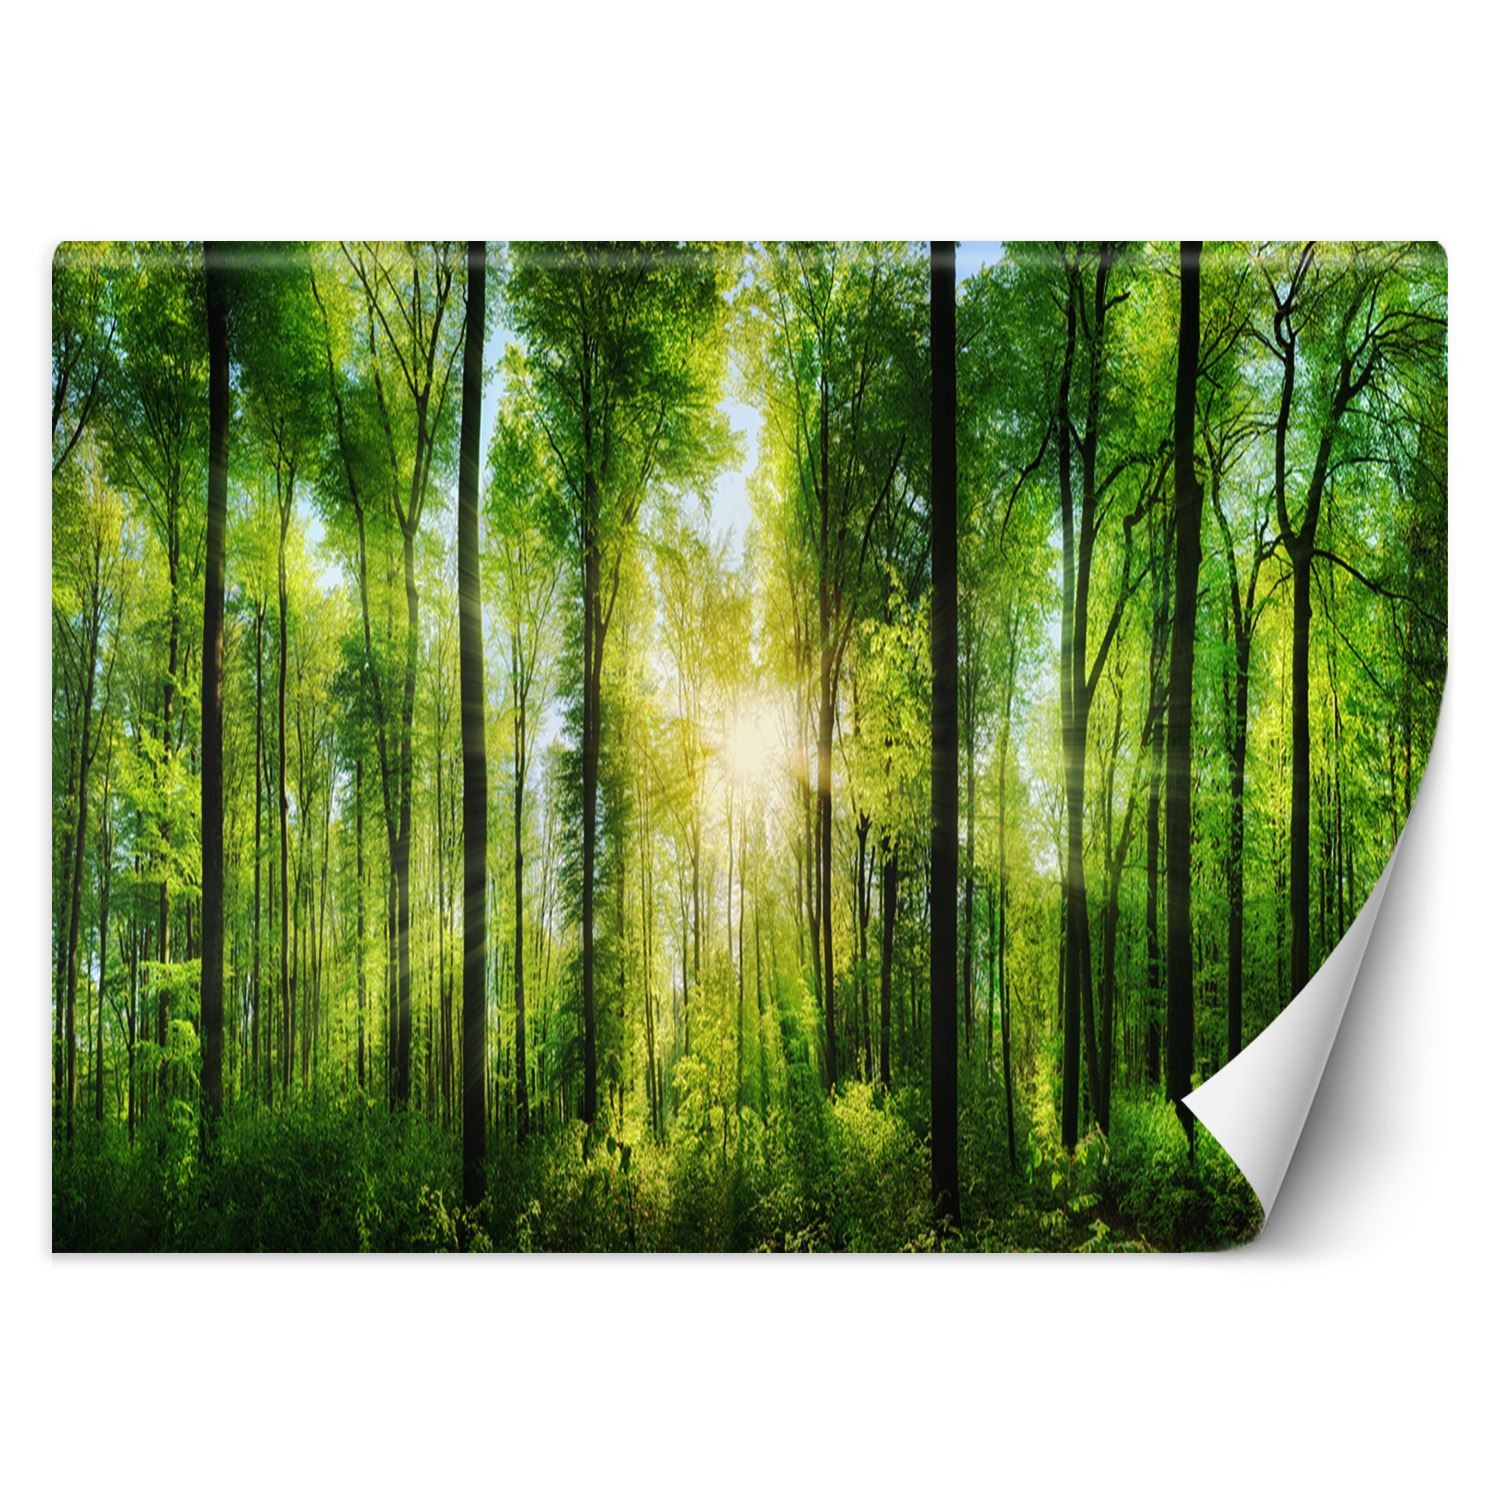 Trend24 – Behang – Zonnestralen In Een Groen Bos – Vliesbehang – Fotobehang Natuur – Behang Woonkamer – 400x280x2 cm – Incl. behanglijm